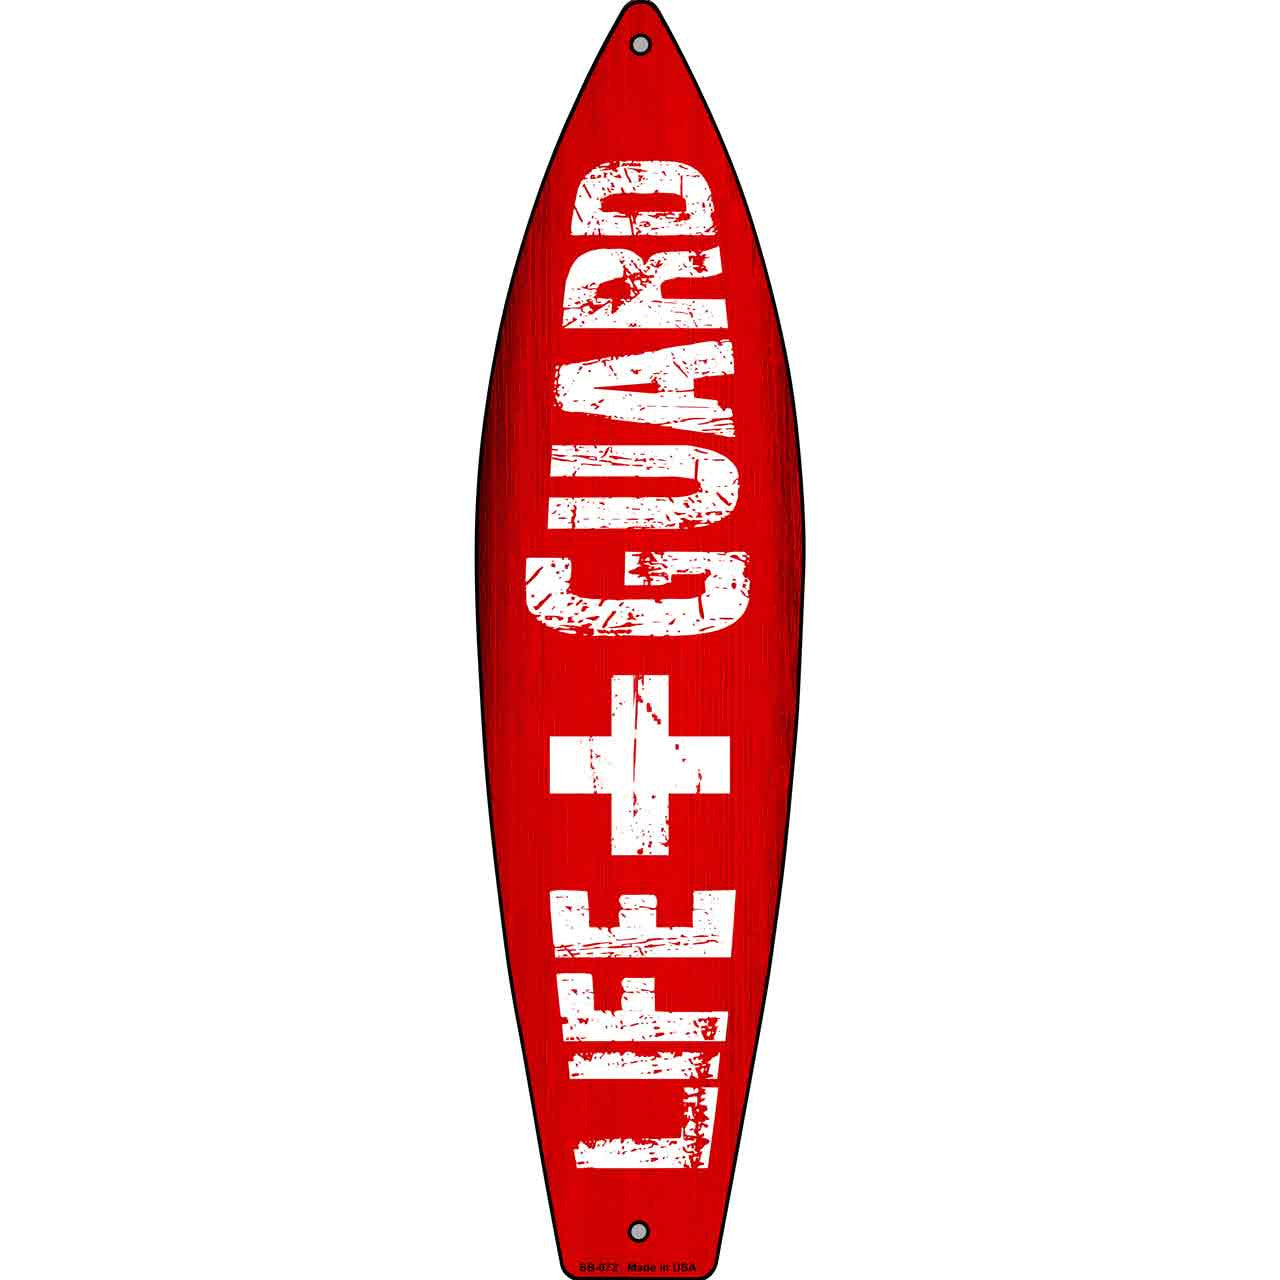 Life Guard Board 17" x 4.5" Metal Novelty Surfboard Sign SB-072